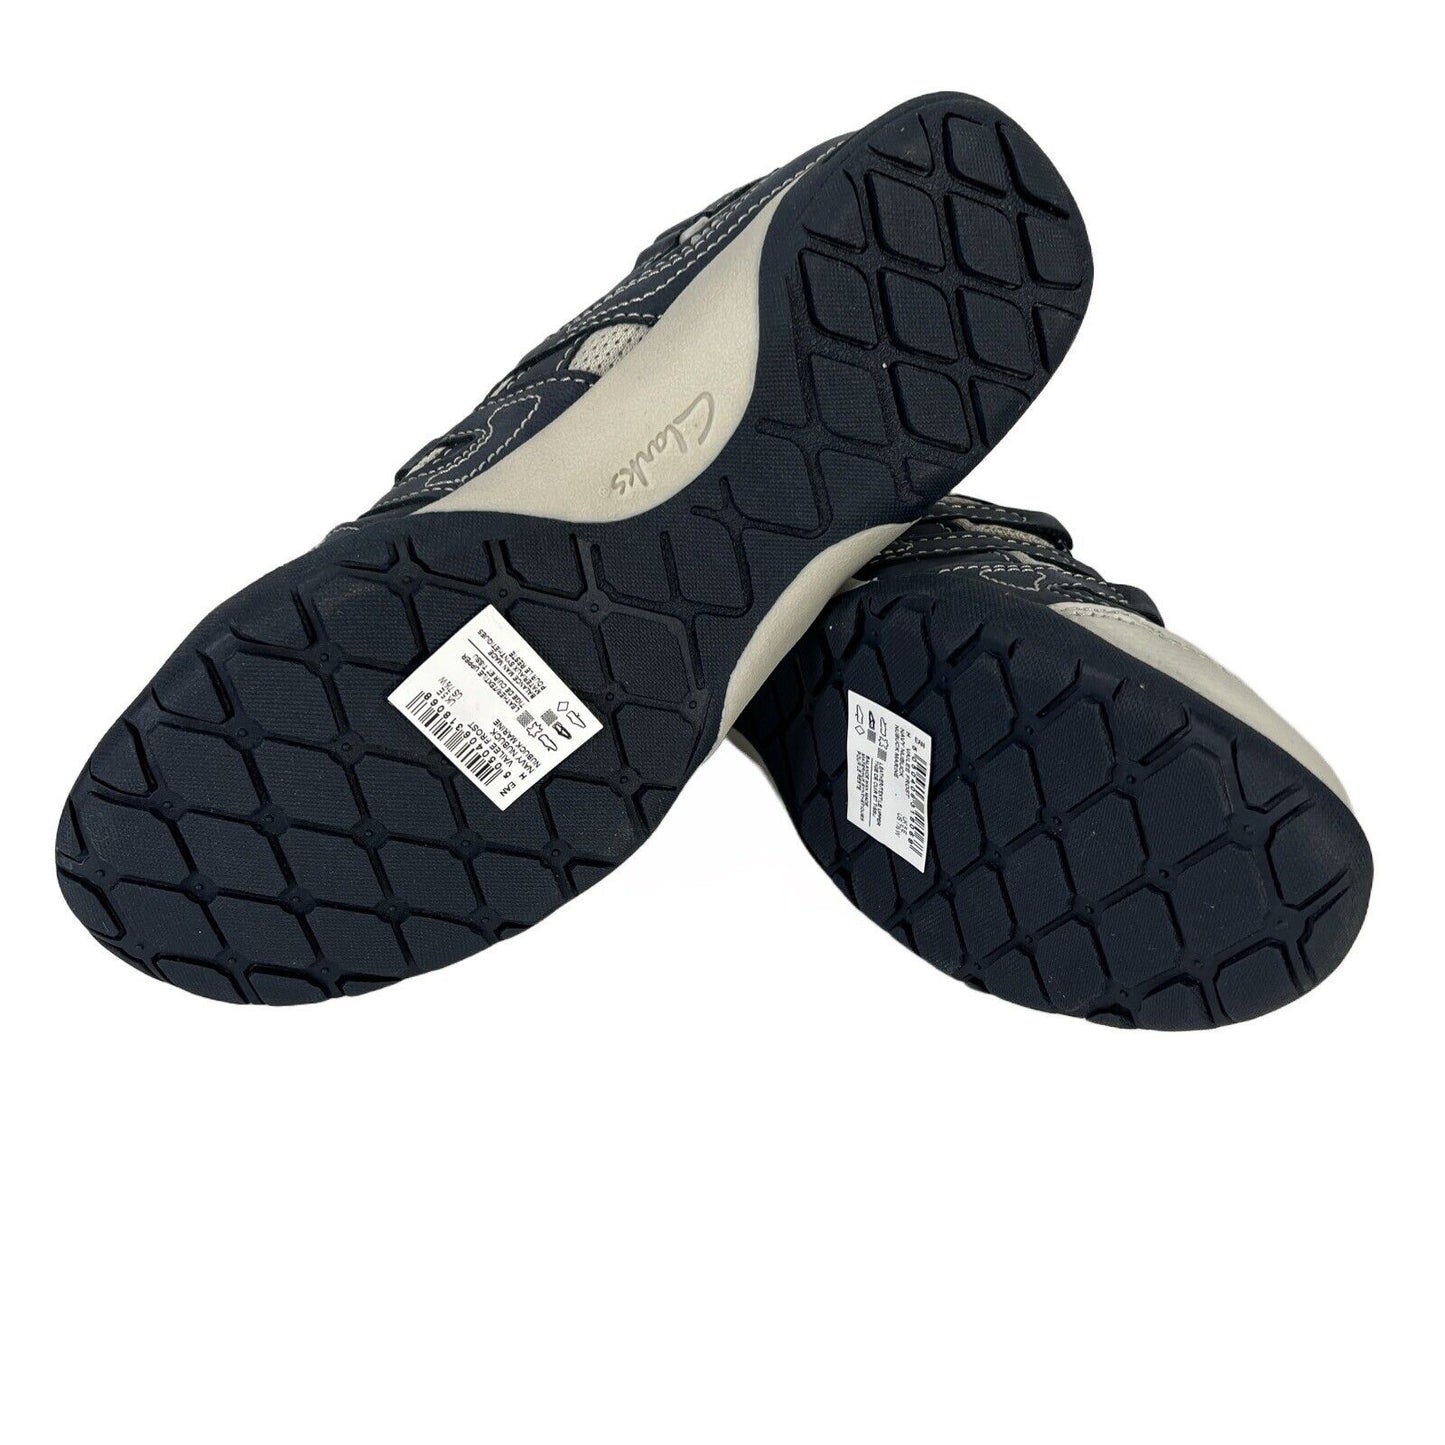 NUEVAS sandalias deportivas Clarks Vailee Frost azul marino para mujer - 7,5 de ancho